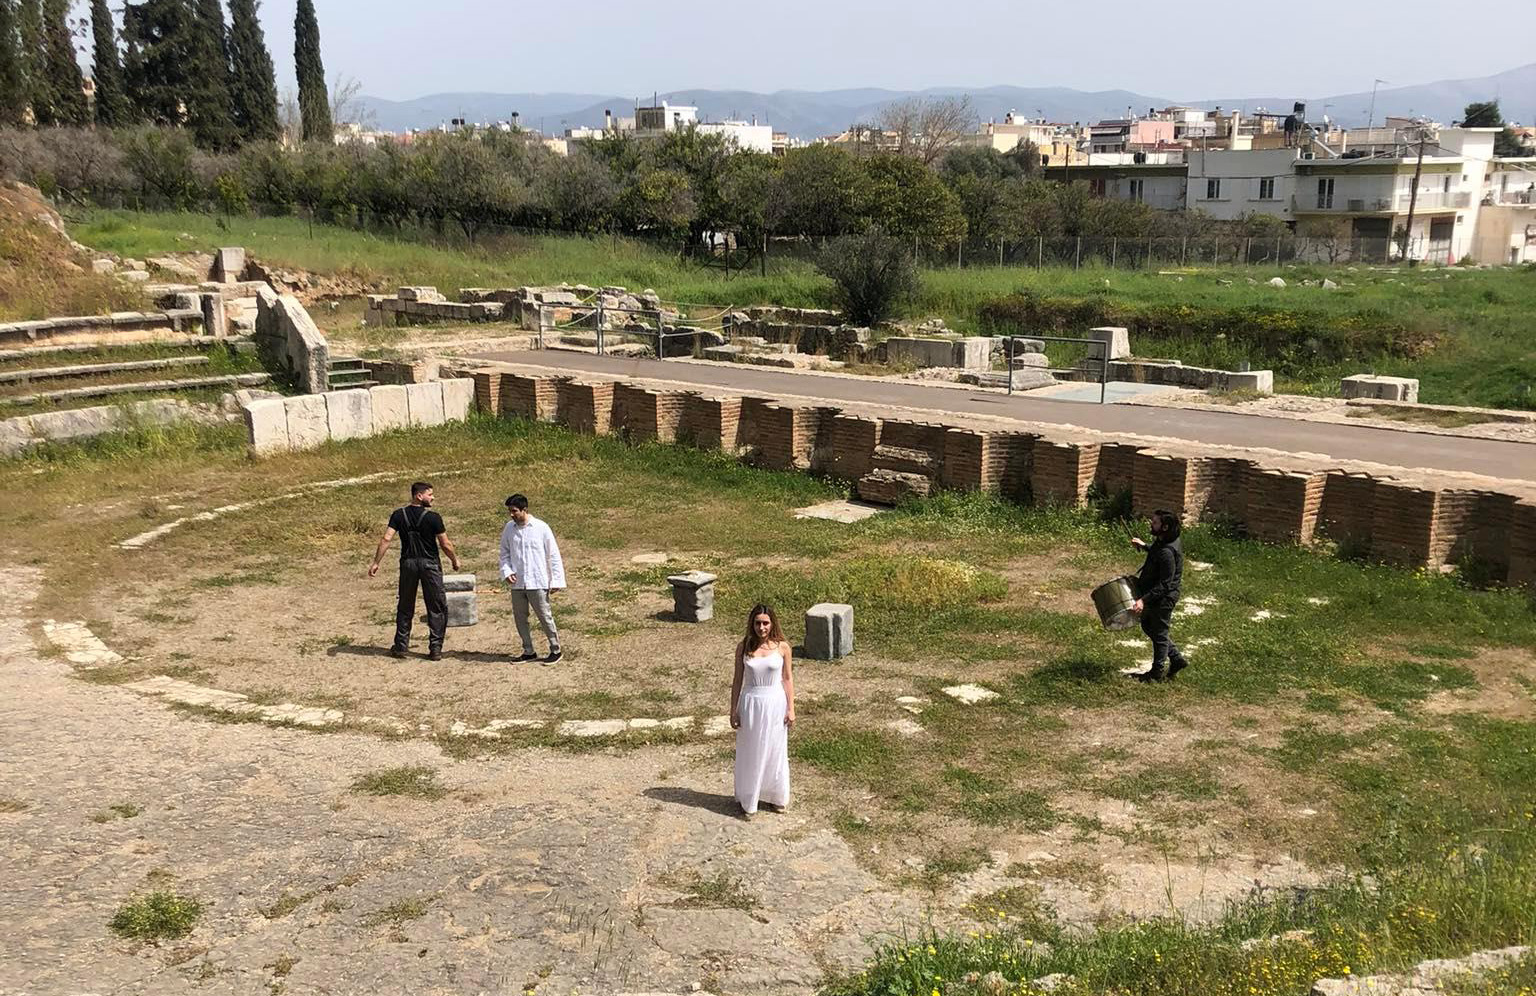 Τι είναι το έργο “Agòn” που παρουσίασαν Ολλανδοί, Έλληνες και Ιταλοί μαθητές στο Αρχαίο Θέατρο Άργους